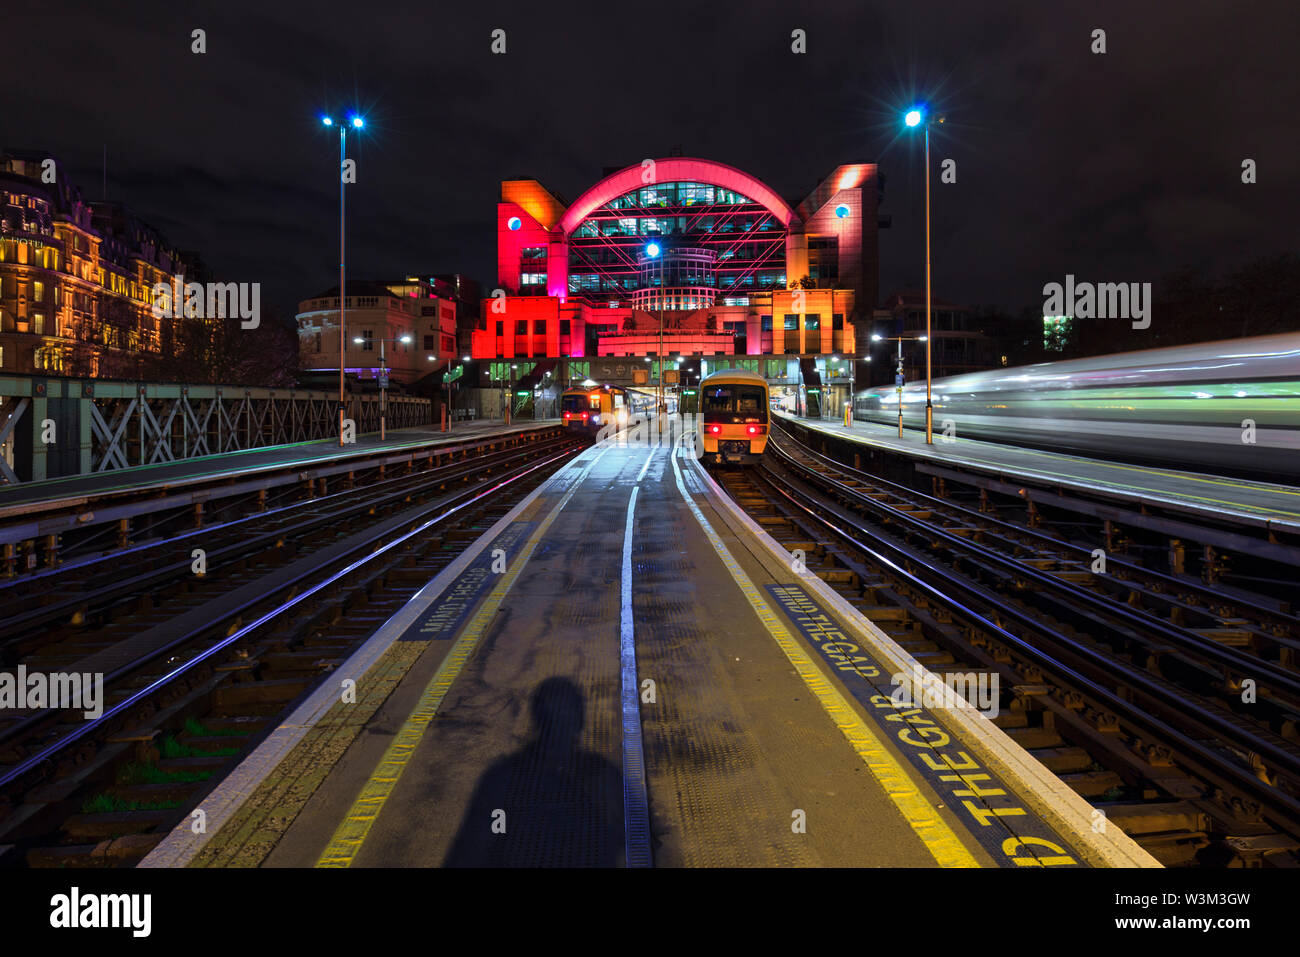 South Eastern Trains classe 465 e 375 i treni elettrici a Londra Charing Cross Station di notte con un terzo treno in partenza Foto Stock